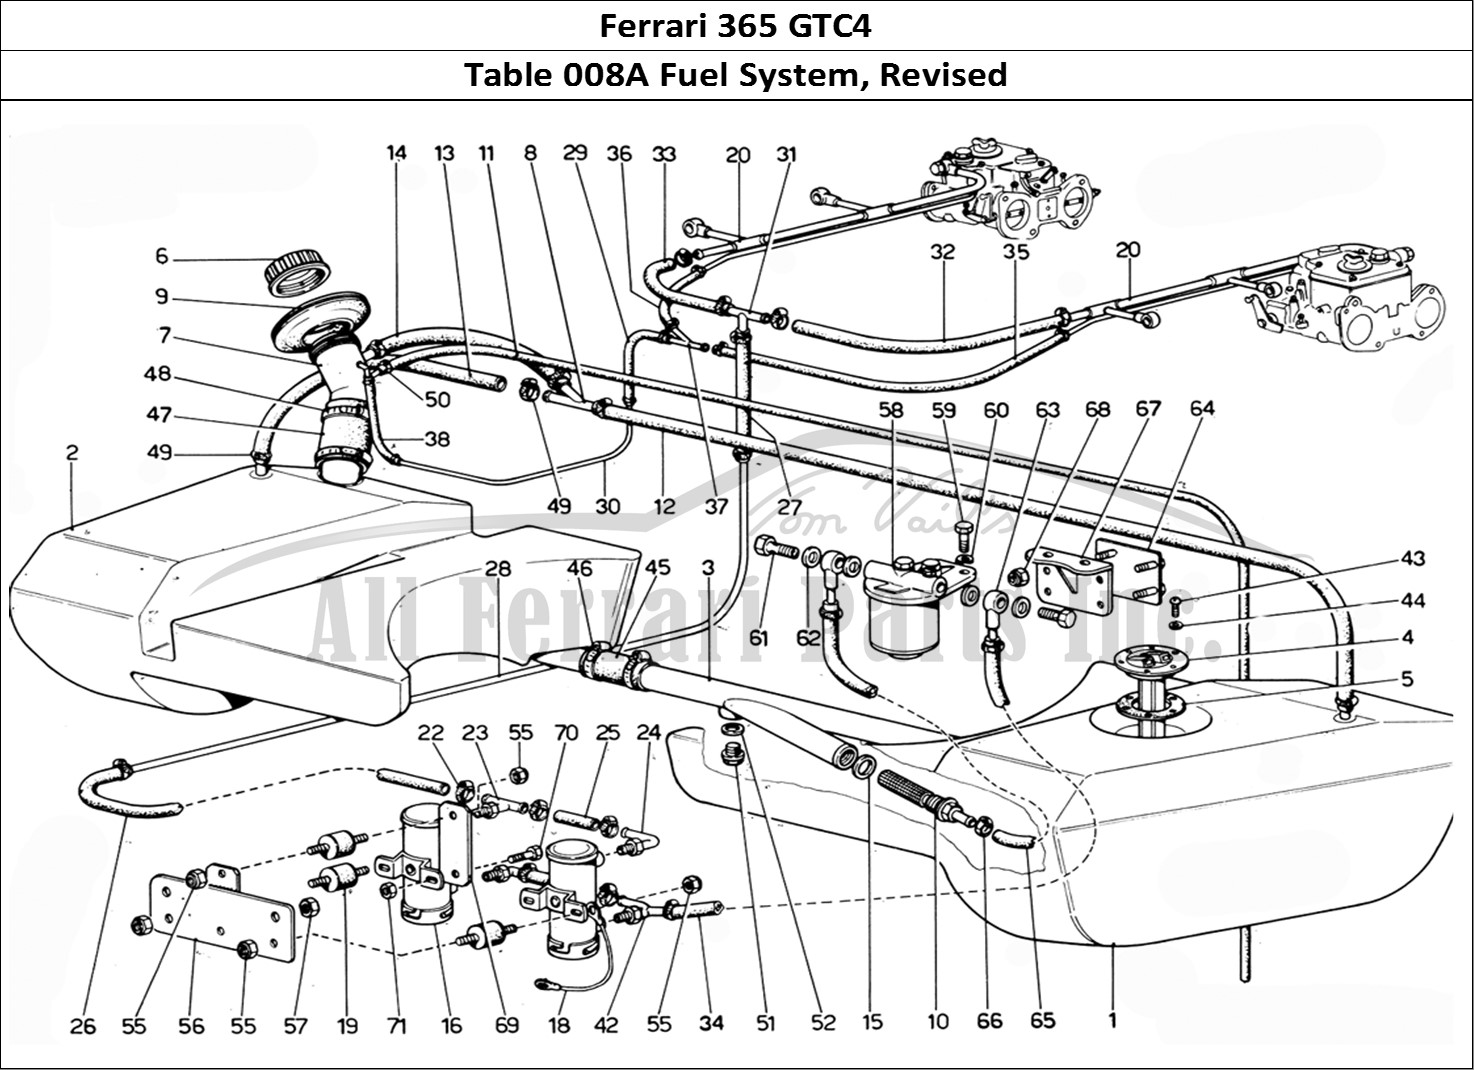 Ferrari Parts Ferrari 365 GTC4 (Mechanical) Page 008 Fuel system - Revision